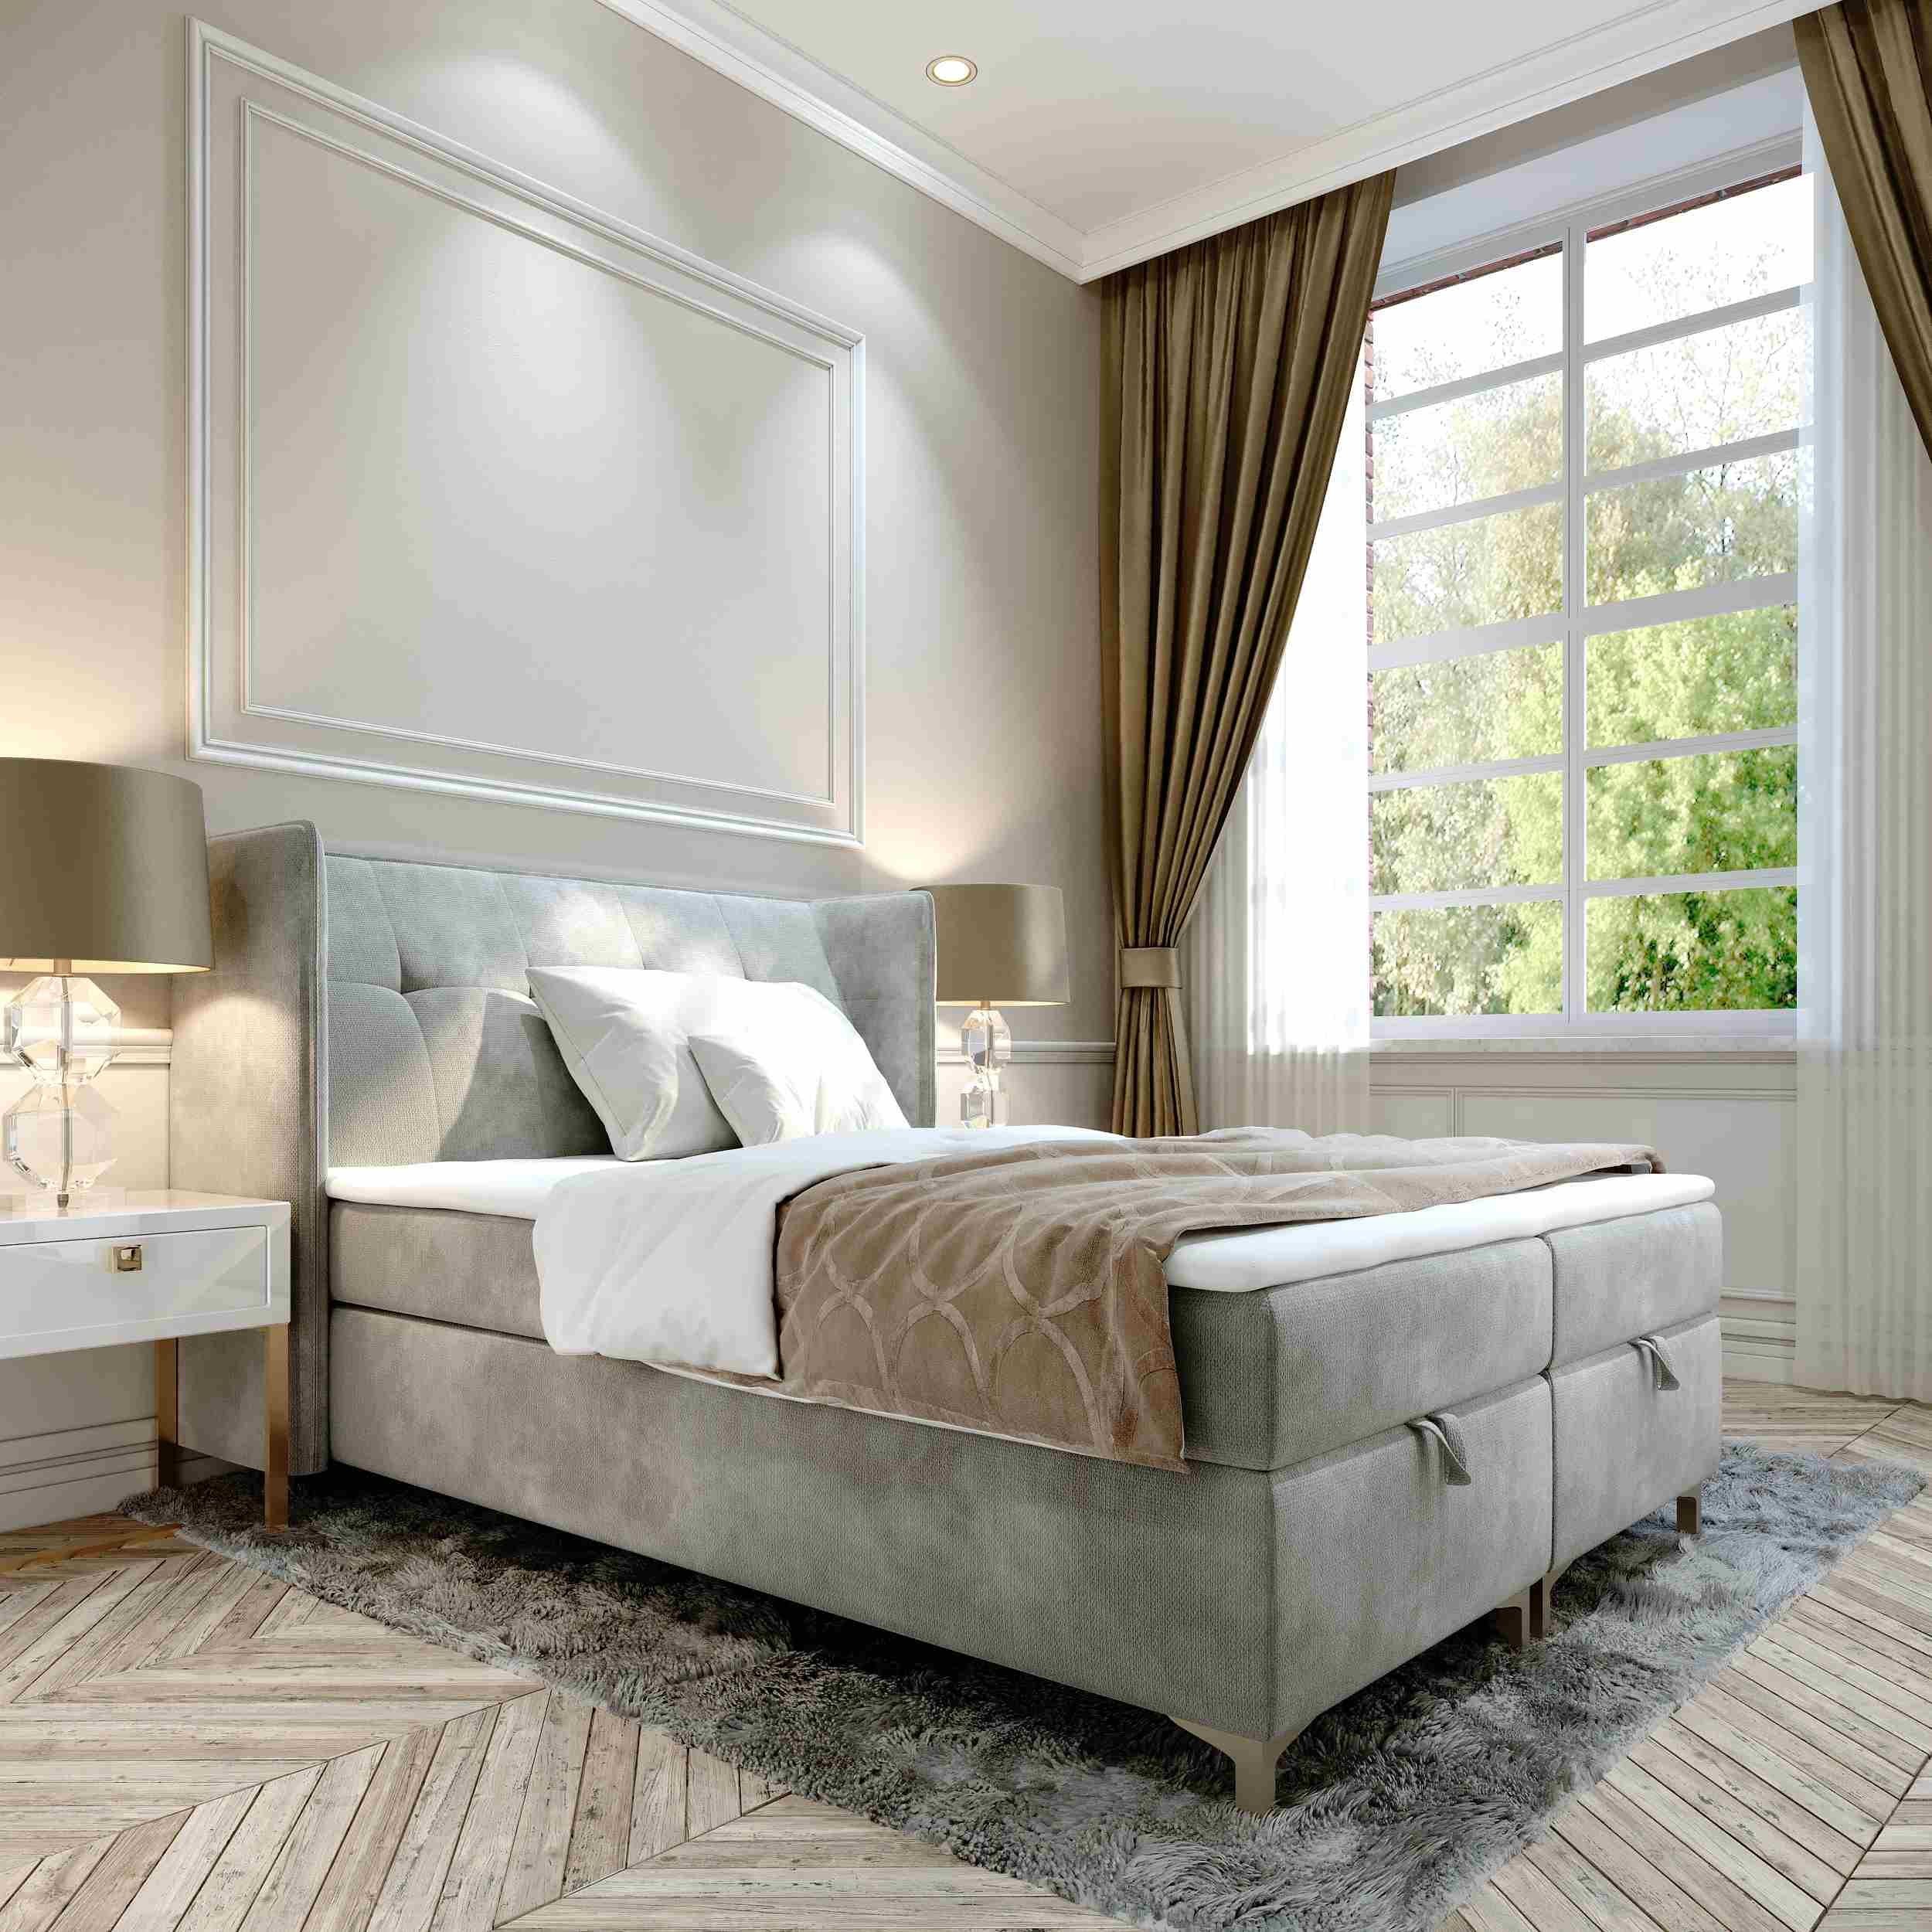 Furnix Polsterbett TOLIE 140,160, 180, 200x 200 cm Bett mit Bettkasten und Topper, wahlweise in 5 Größen und 7 Farben Grau